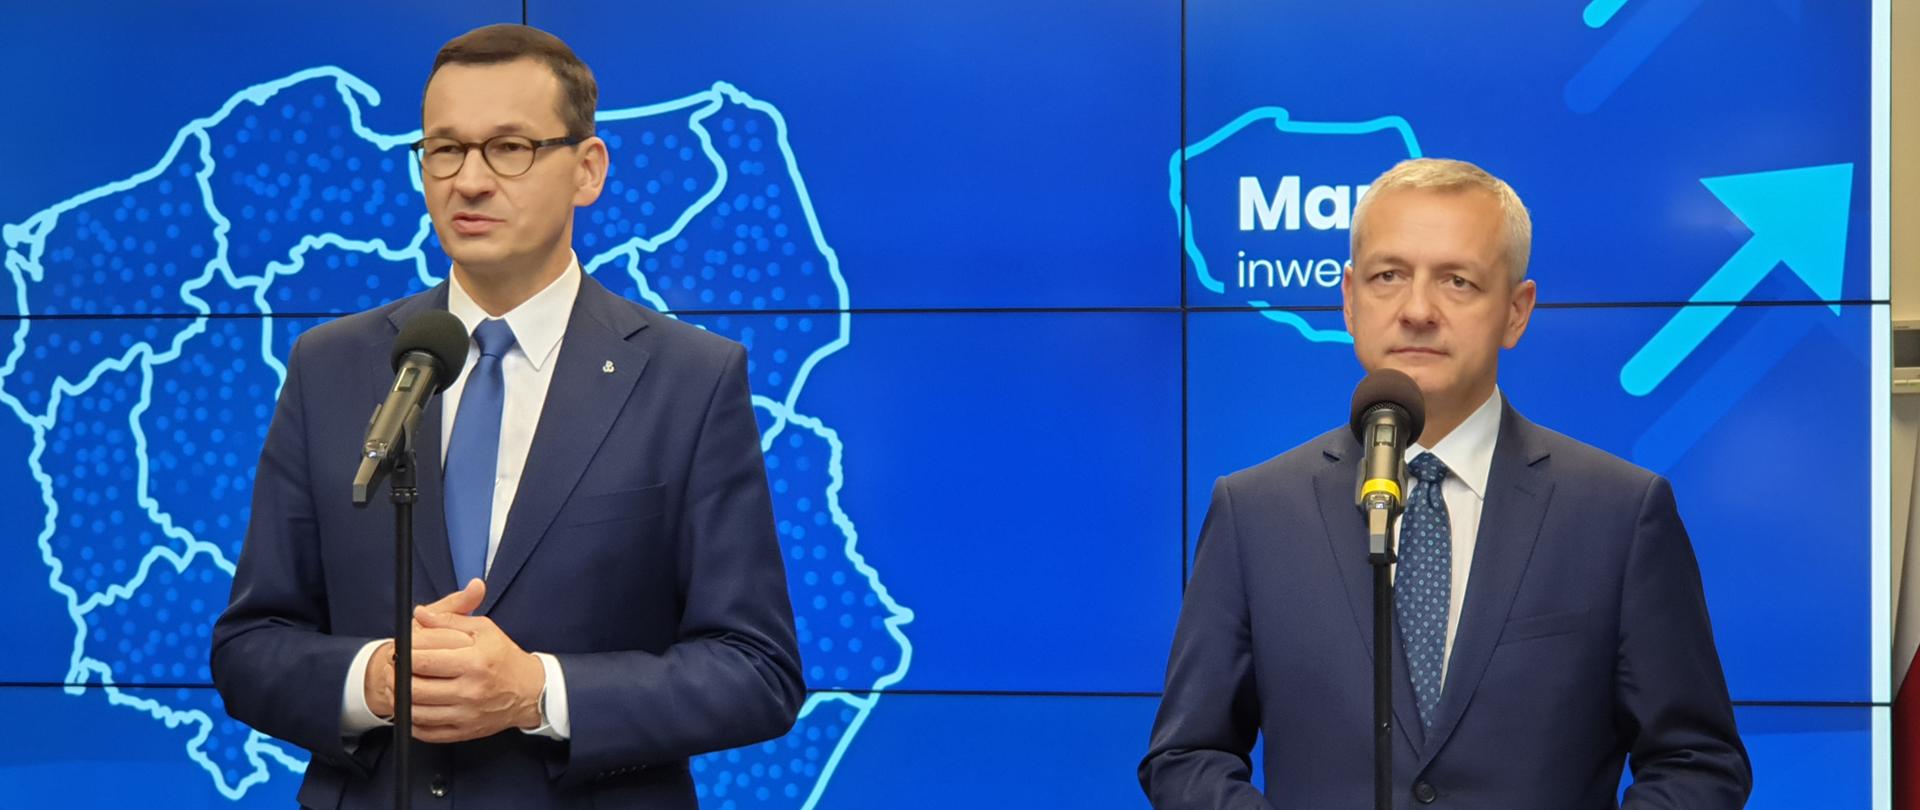 Premier Mateusz Morawiecki i minister Marek Zagórski na konferencji prasowej